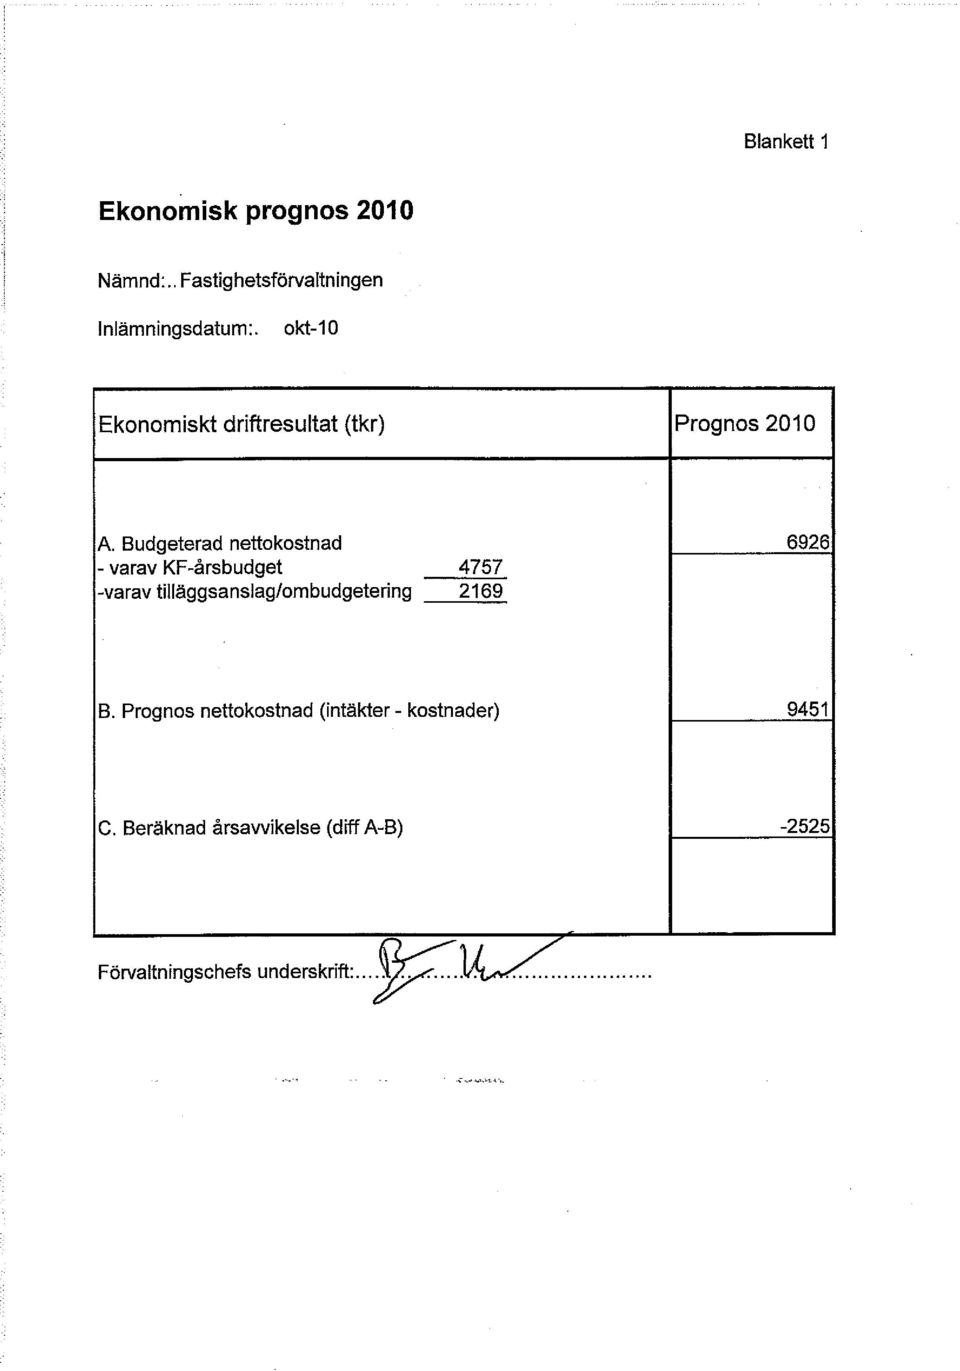 Budgeterad nettokostnad 6926 - varav KF-årsbudget 4757 -varav tilläggsanslag/ombudgetering